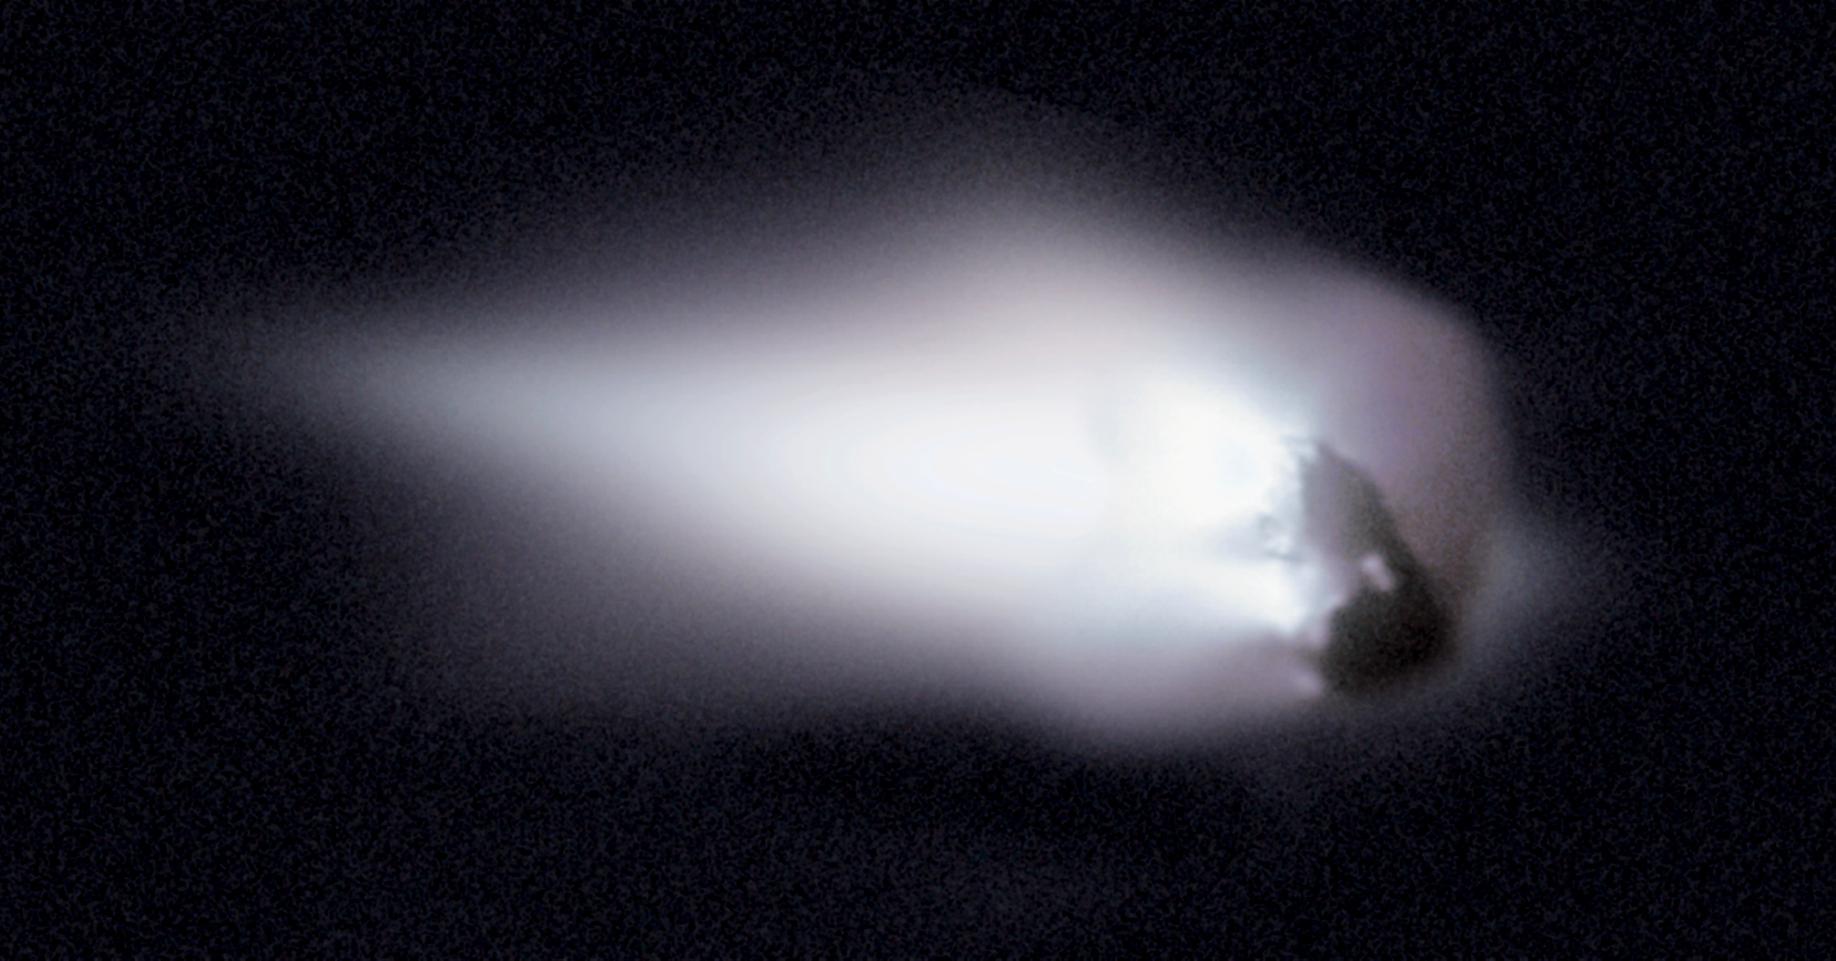 ядро кометы и кома